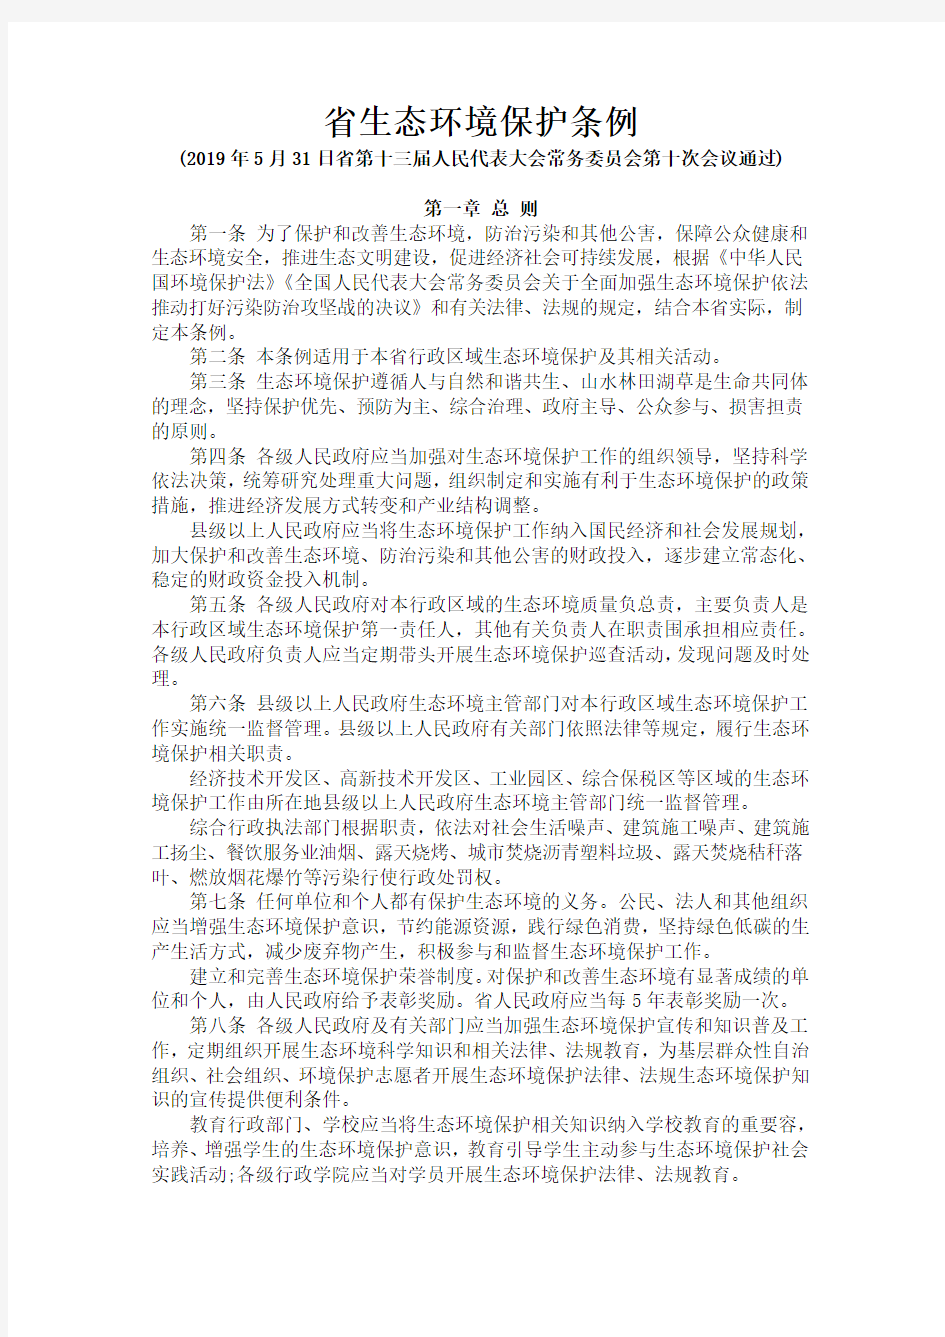 贵州省生态环境保护条例(最新版_2019年5月31日通过_8月1日起实施)